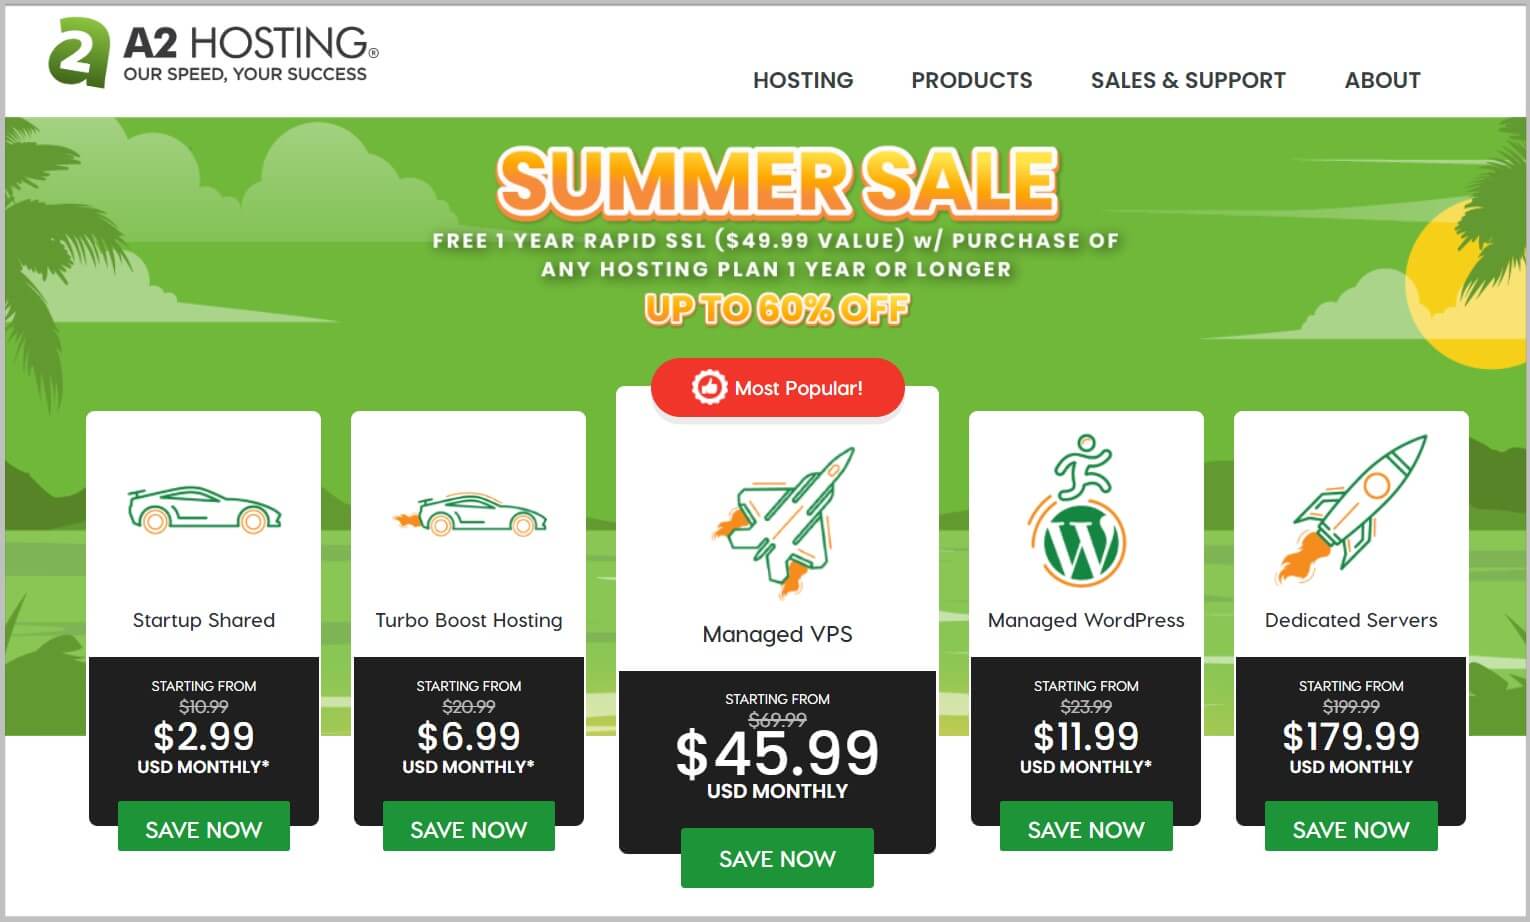 A2 Hosting Summer Sale 2022- 72% Discount on Web Hosting Plans